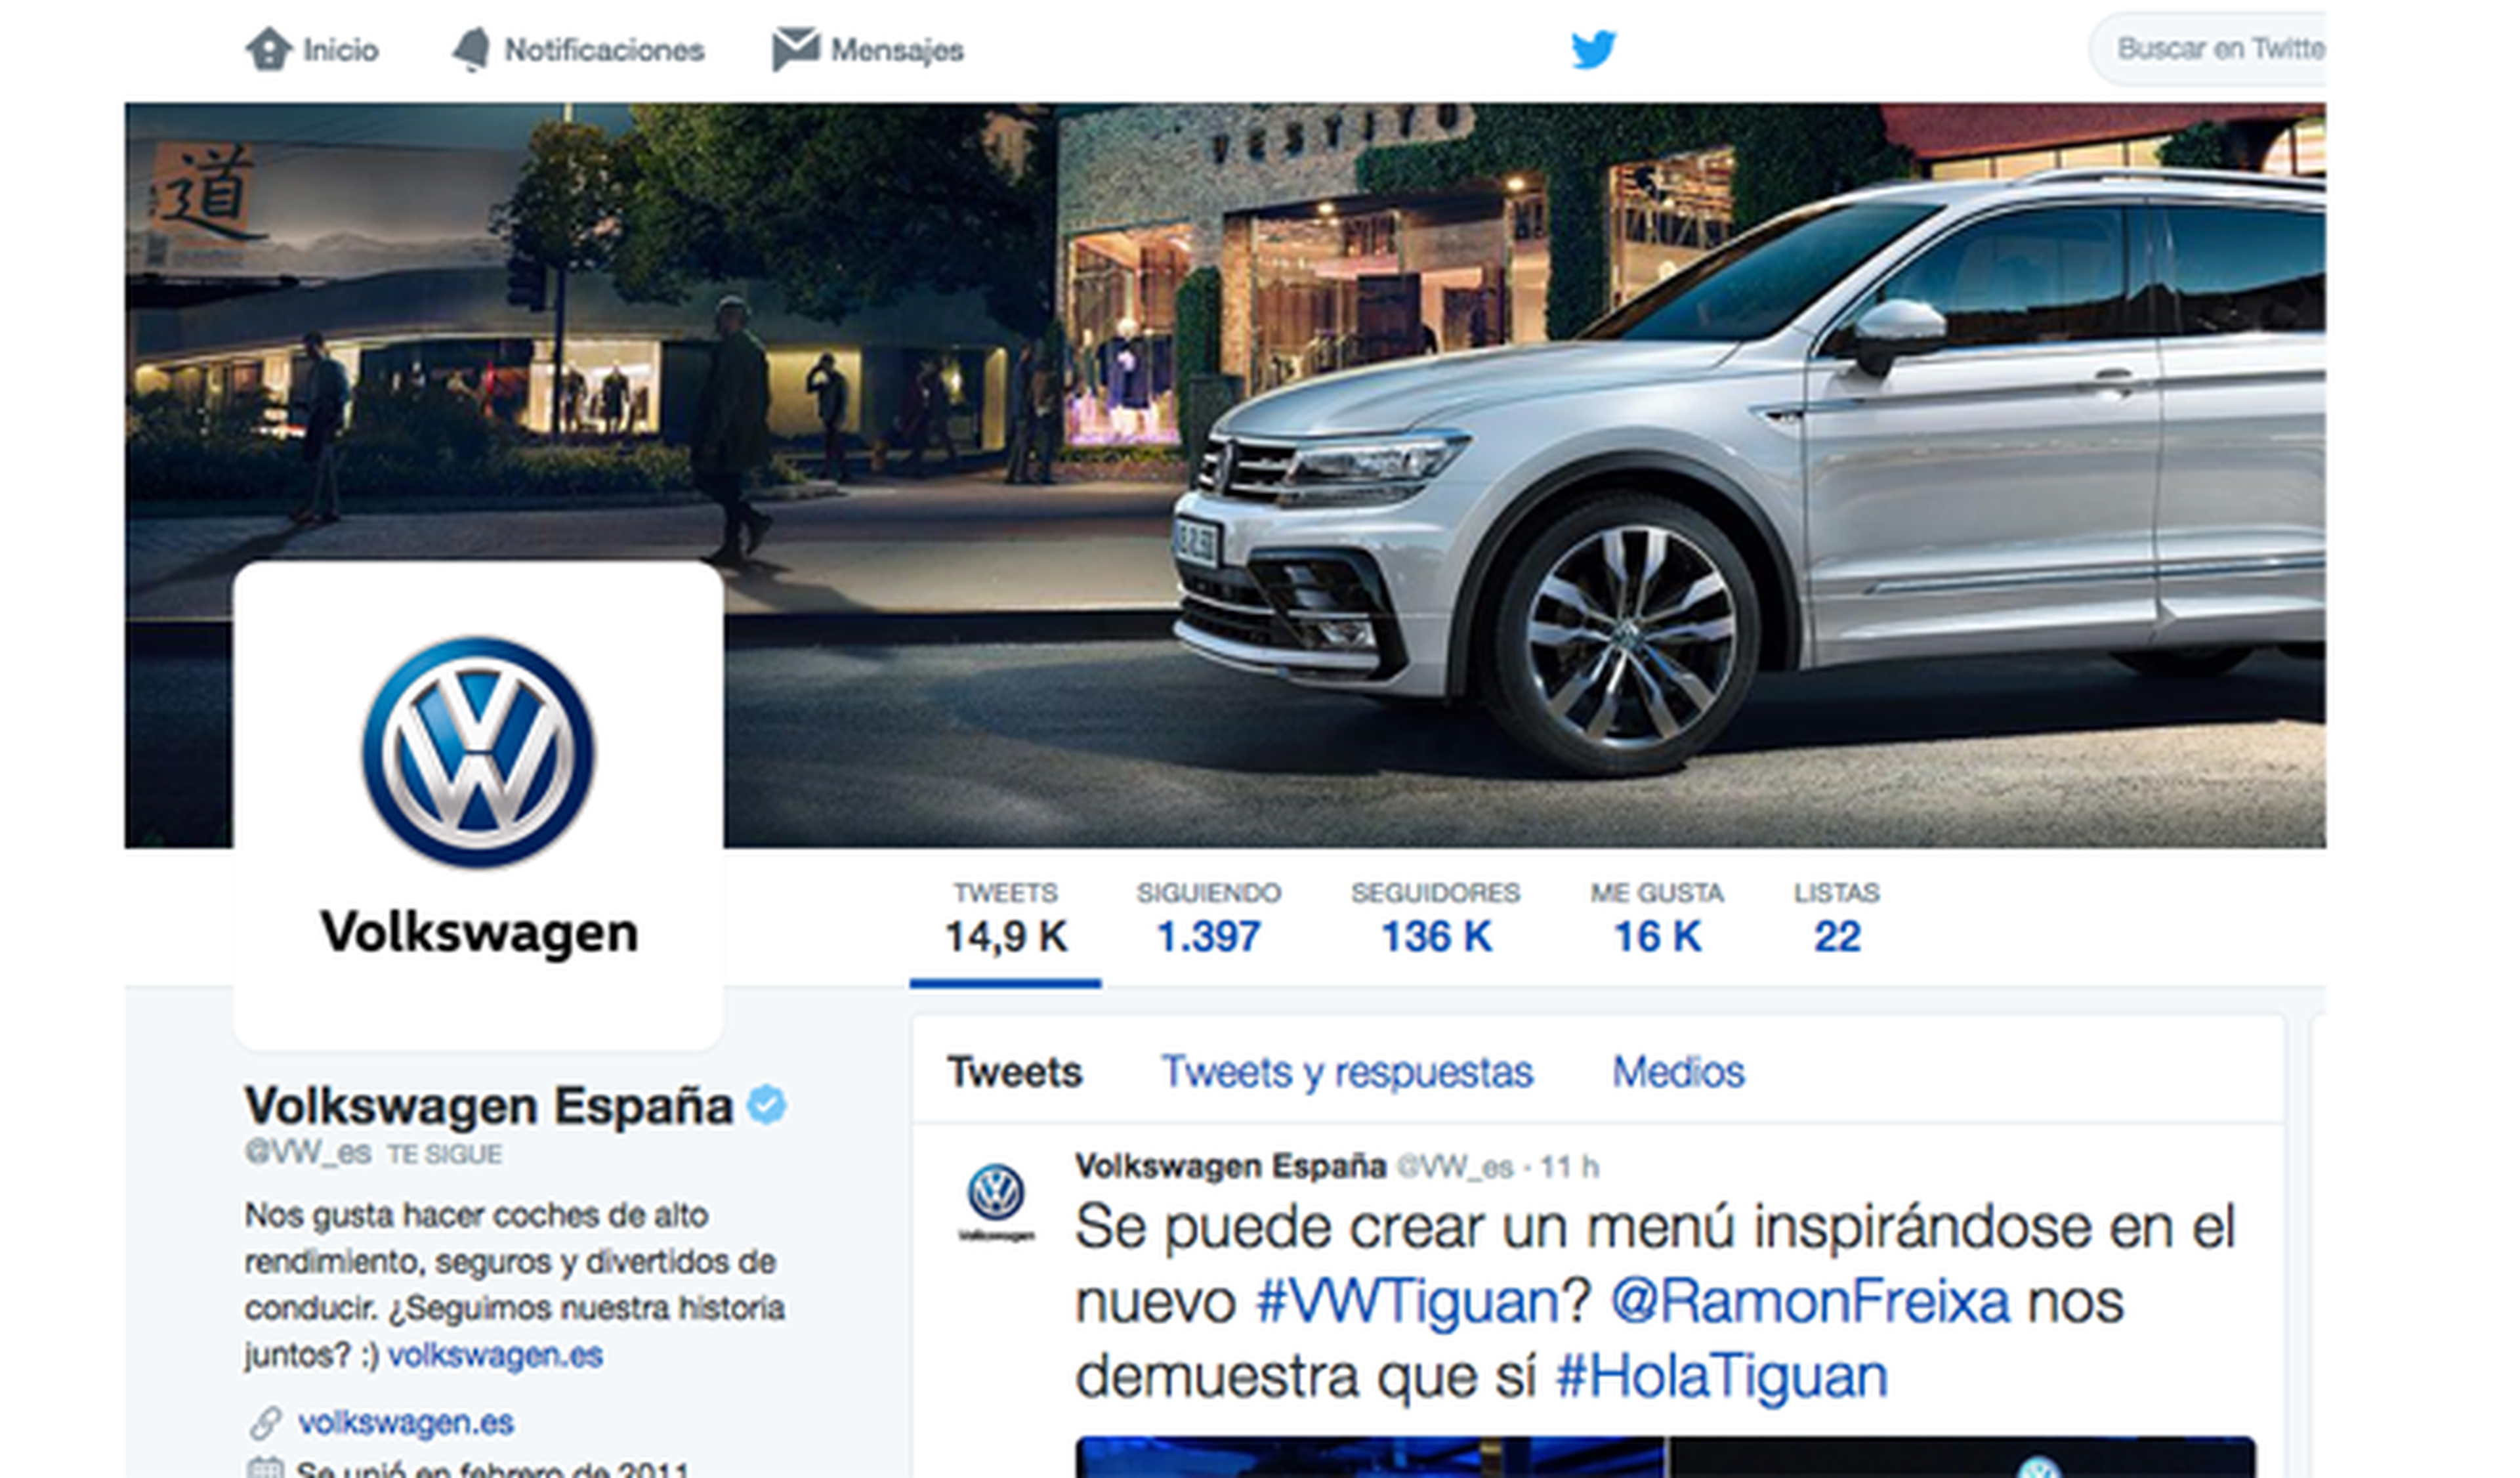 La marca de coches con más seguidores en Twitter